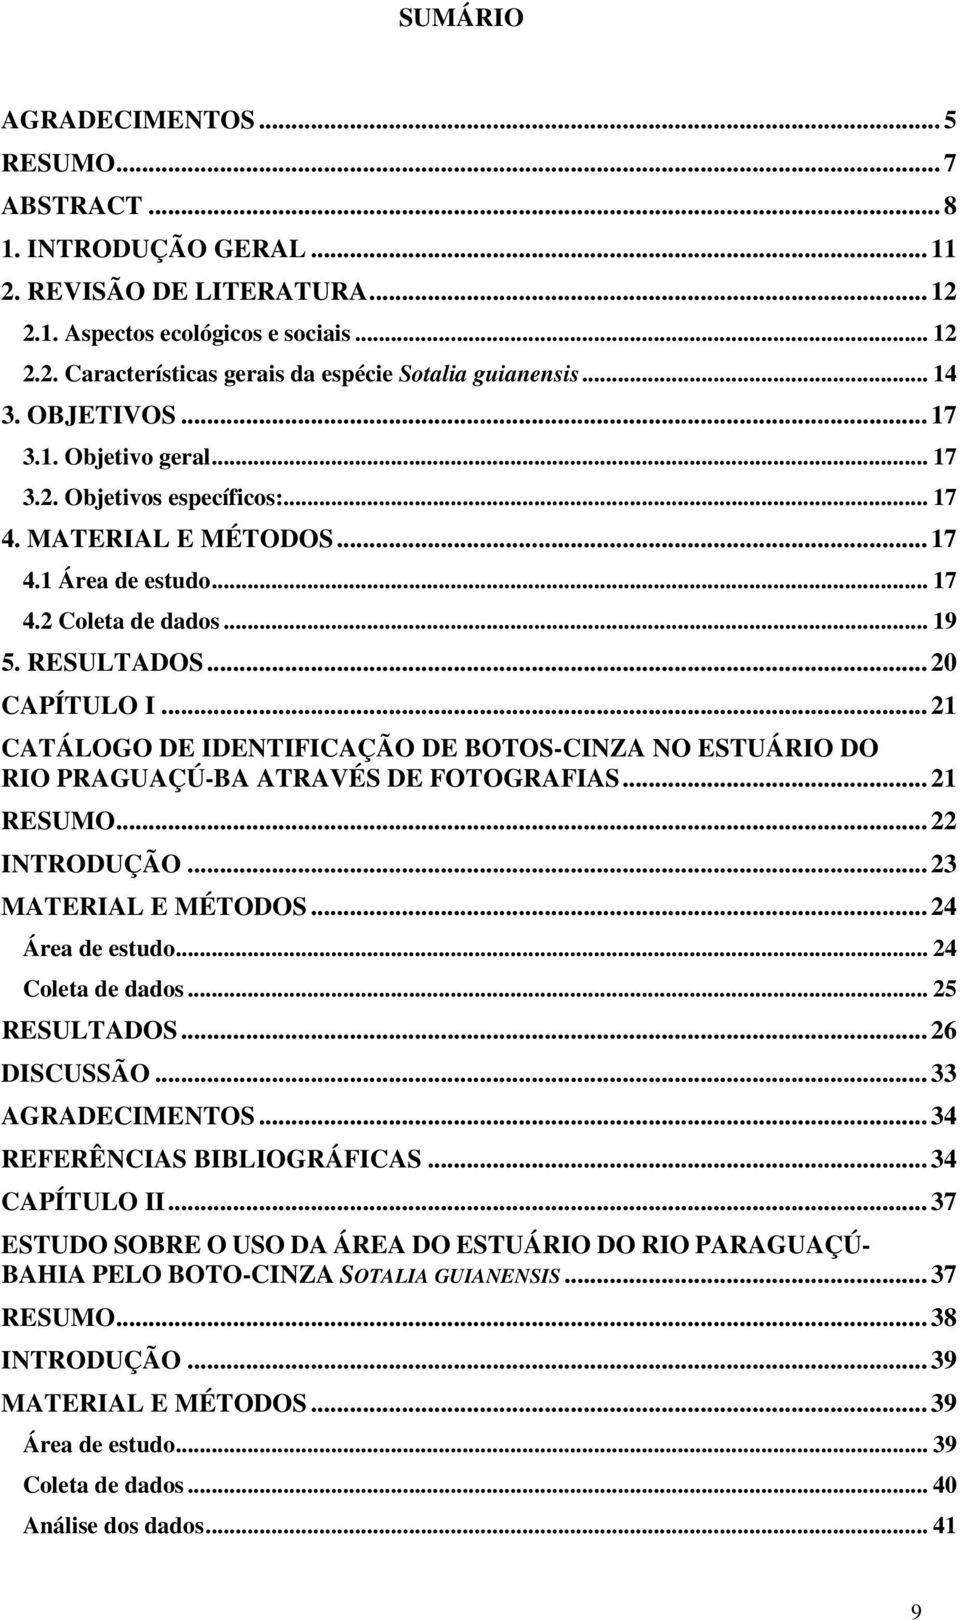 .. 21 CATÁLOGO DE IDENTIFICAÇÃO DE BOTOS-CINZA NO ESTUÁRIO DO RIO PRAGUAÇÚ-BA ATRAVÉS DE FOTOGRAFIAS... 21 RESUMO... 22 INTRODUÇÃO... 23 MATERIAL E MÉTODOS... 24 Área de estudo... 24 Coleta de dados.